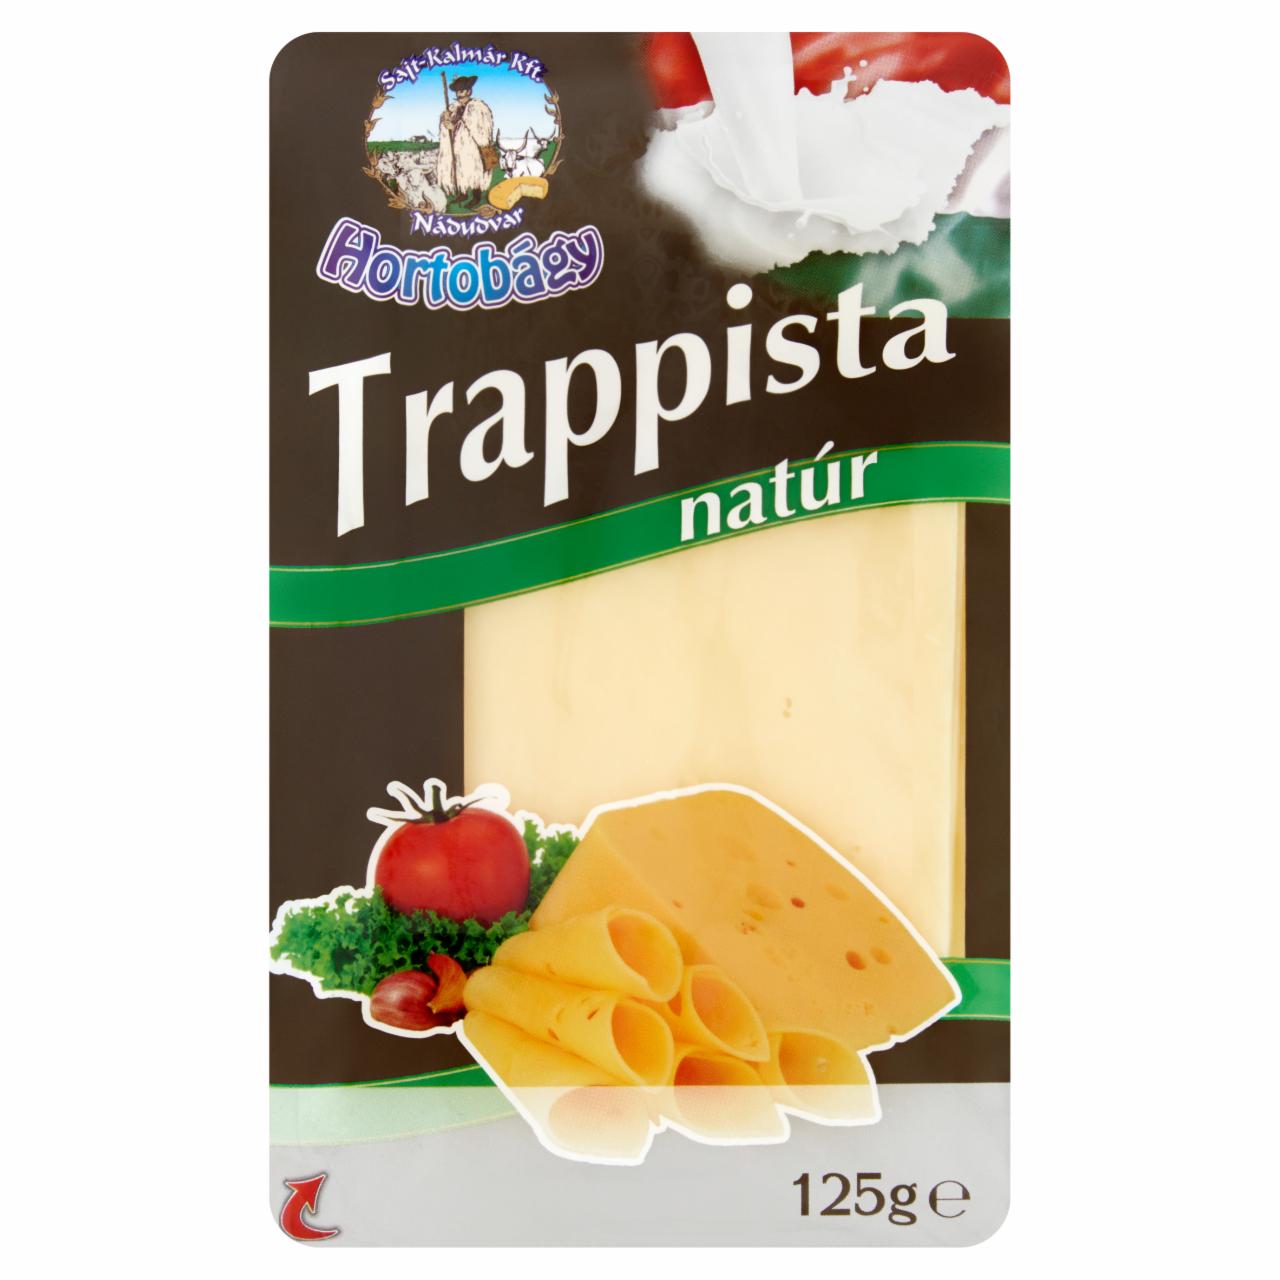 Képek - Hortobágy szeletelt natúr trappista sajt 125 g